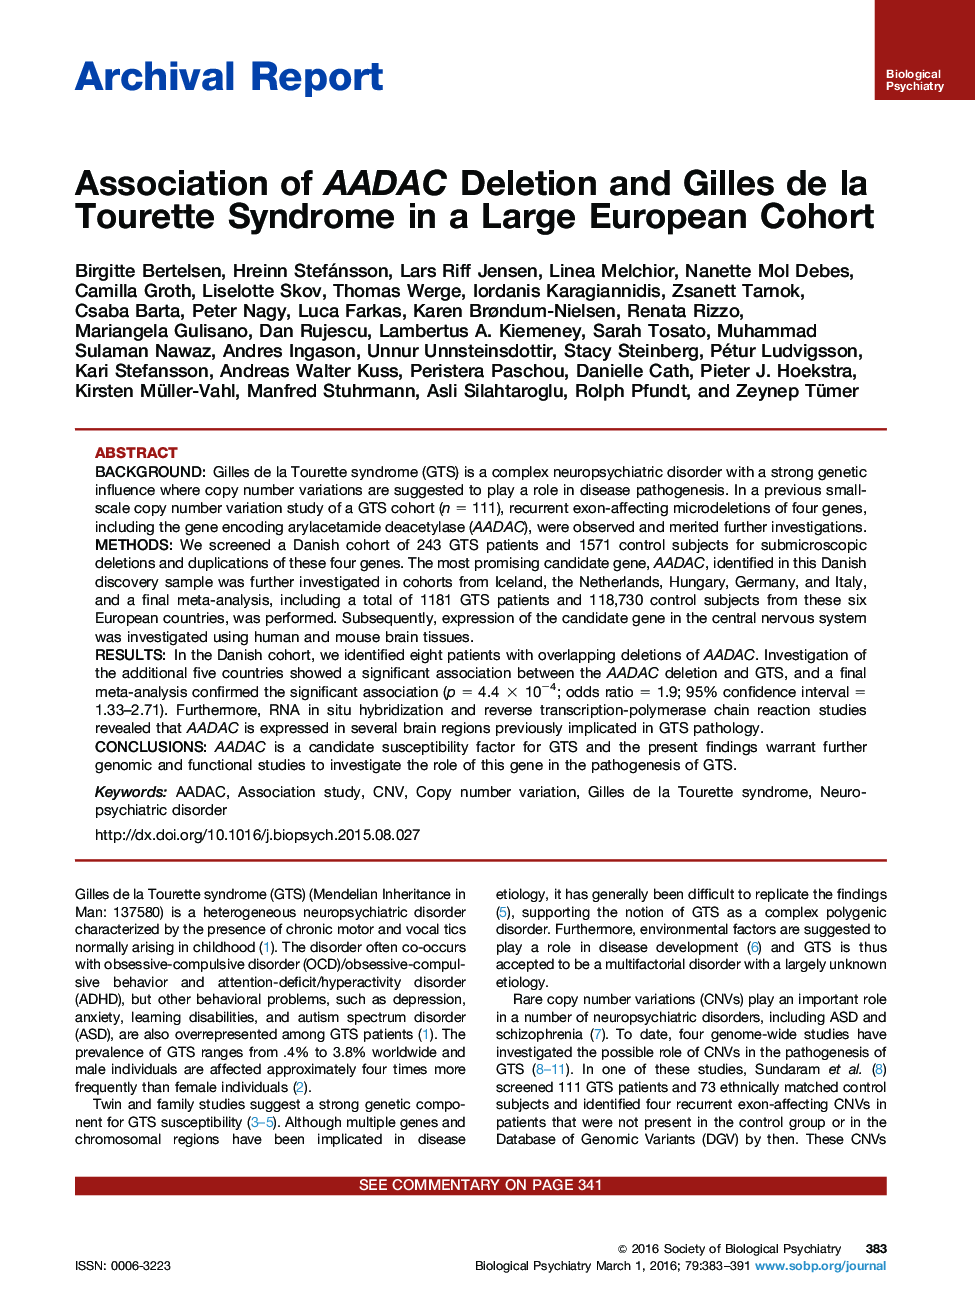 Association of AADAC Deletion and Gilles de la Tourette Syndrome in a Large European Cohort